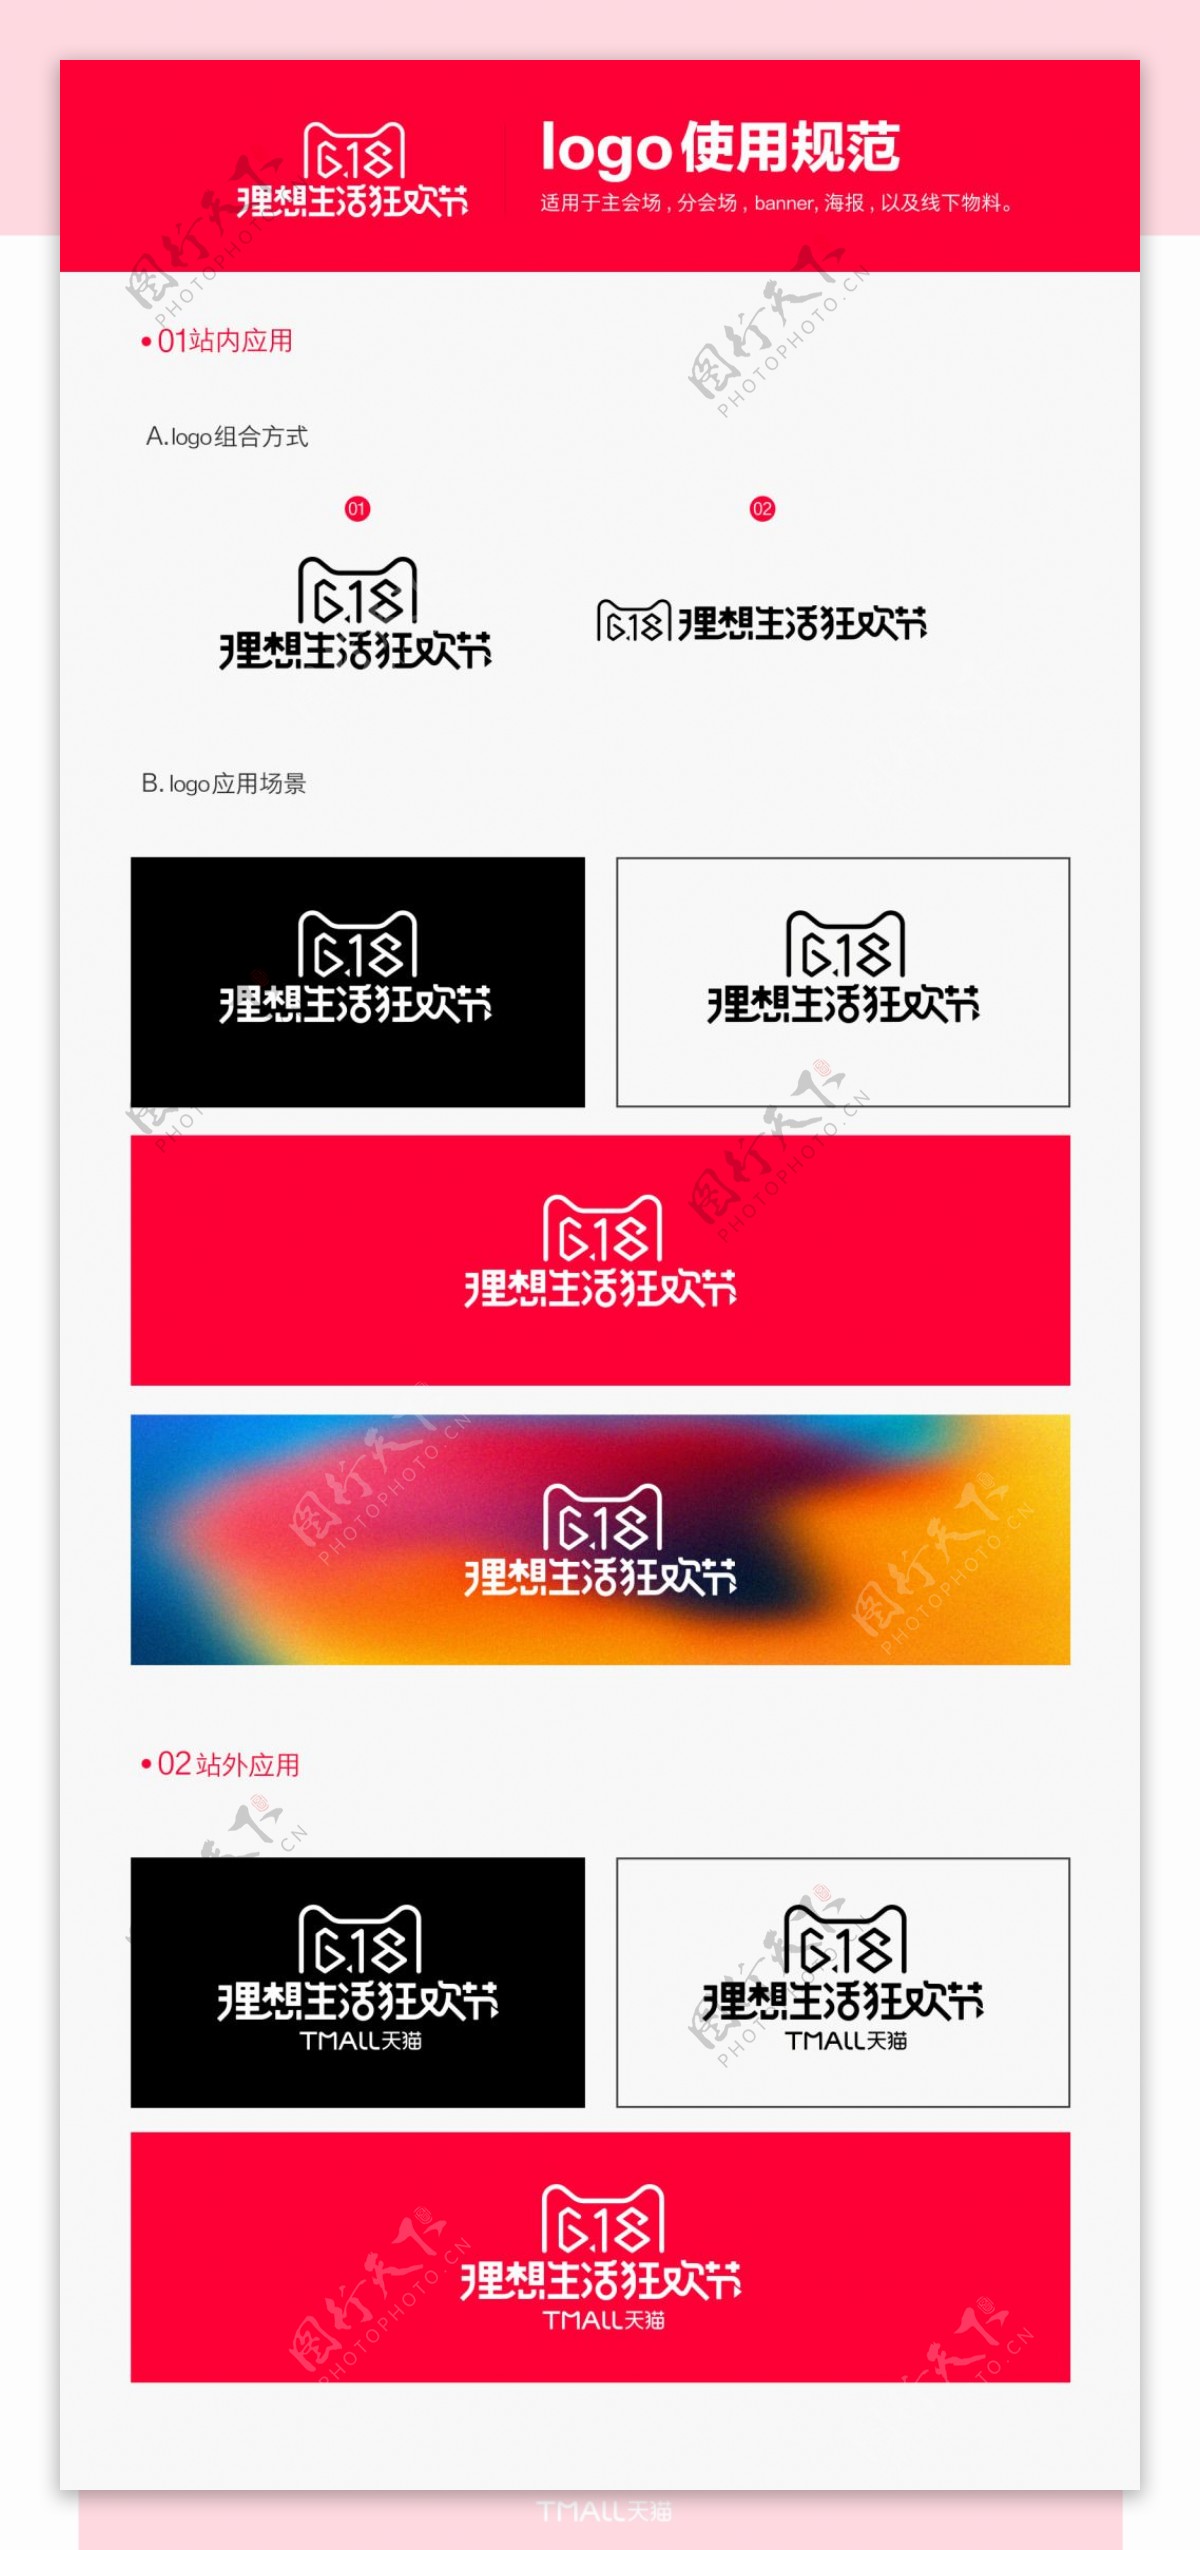 2017年天猫618理想生活节logo